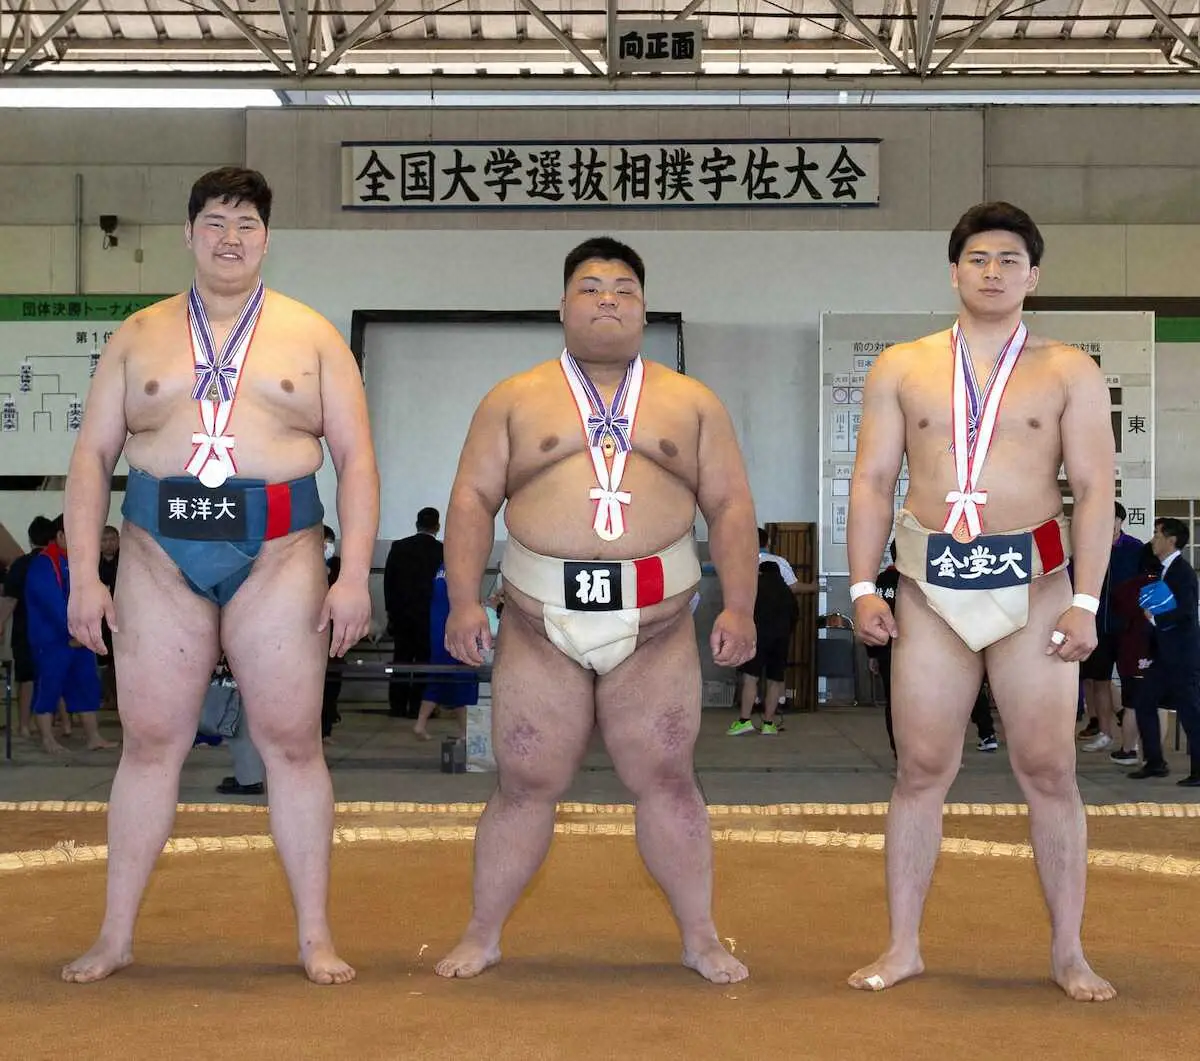 全国大学選抜相撲宇佐大会の個人戦入賞者。（左から）準優勝・オトゴンバト、優勝・五島雅治、3位・大森康弘（提供写真）